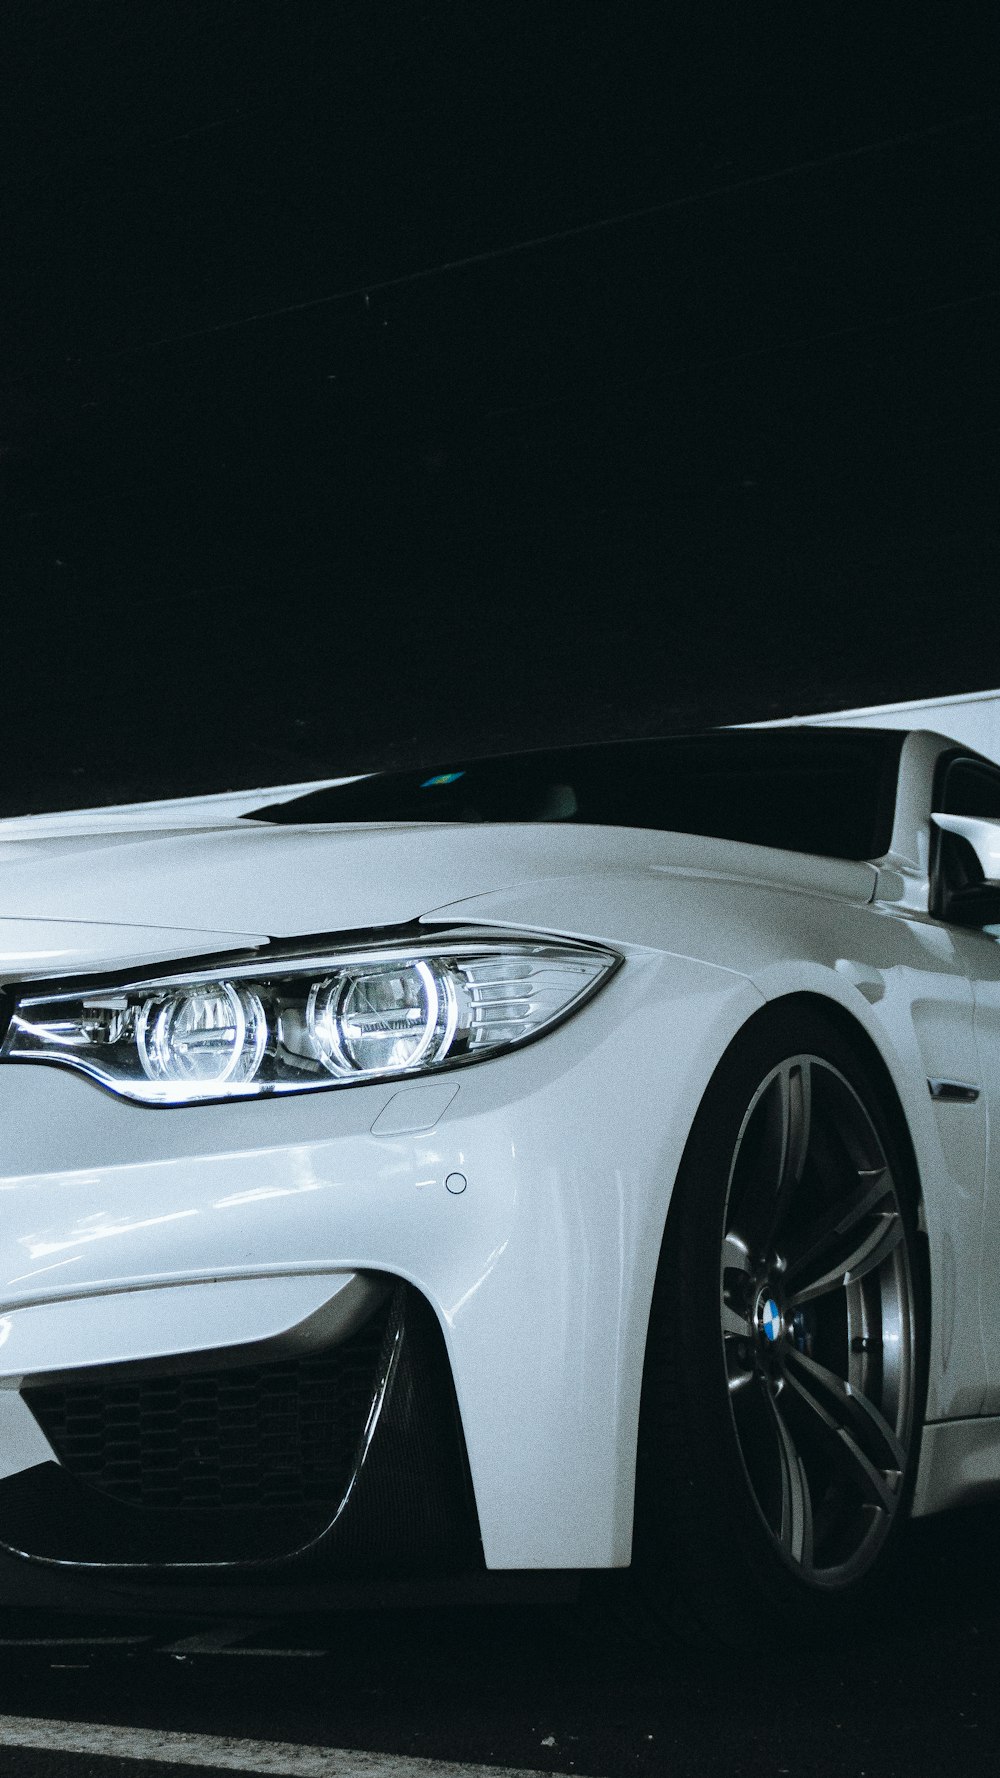 voiture BMW blanche